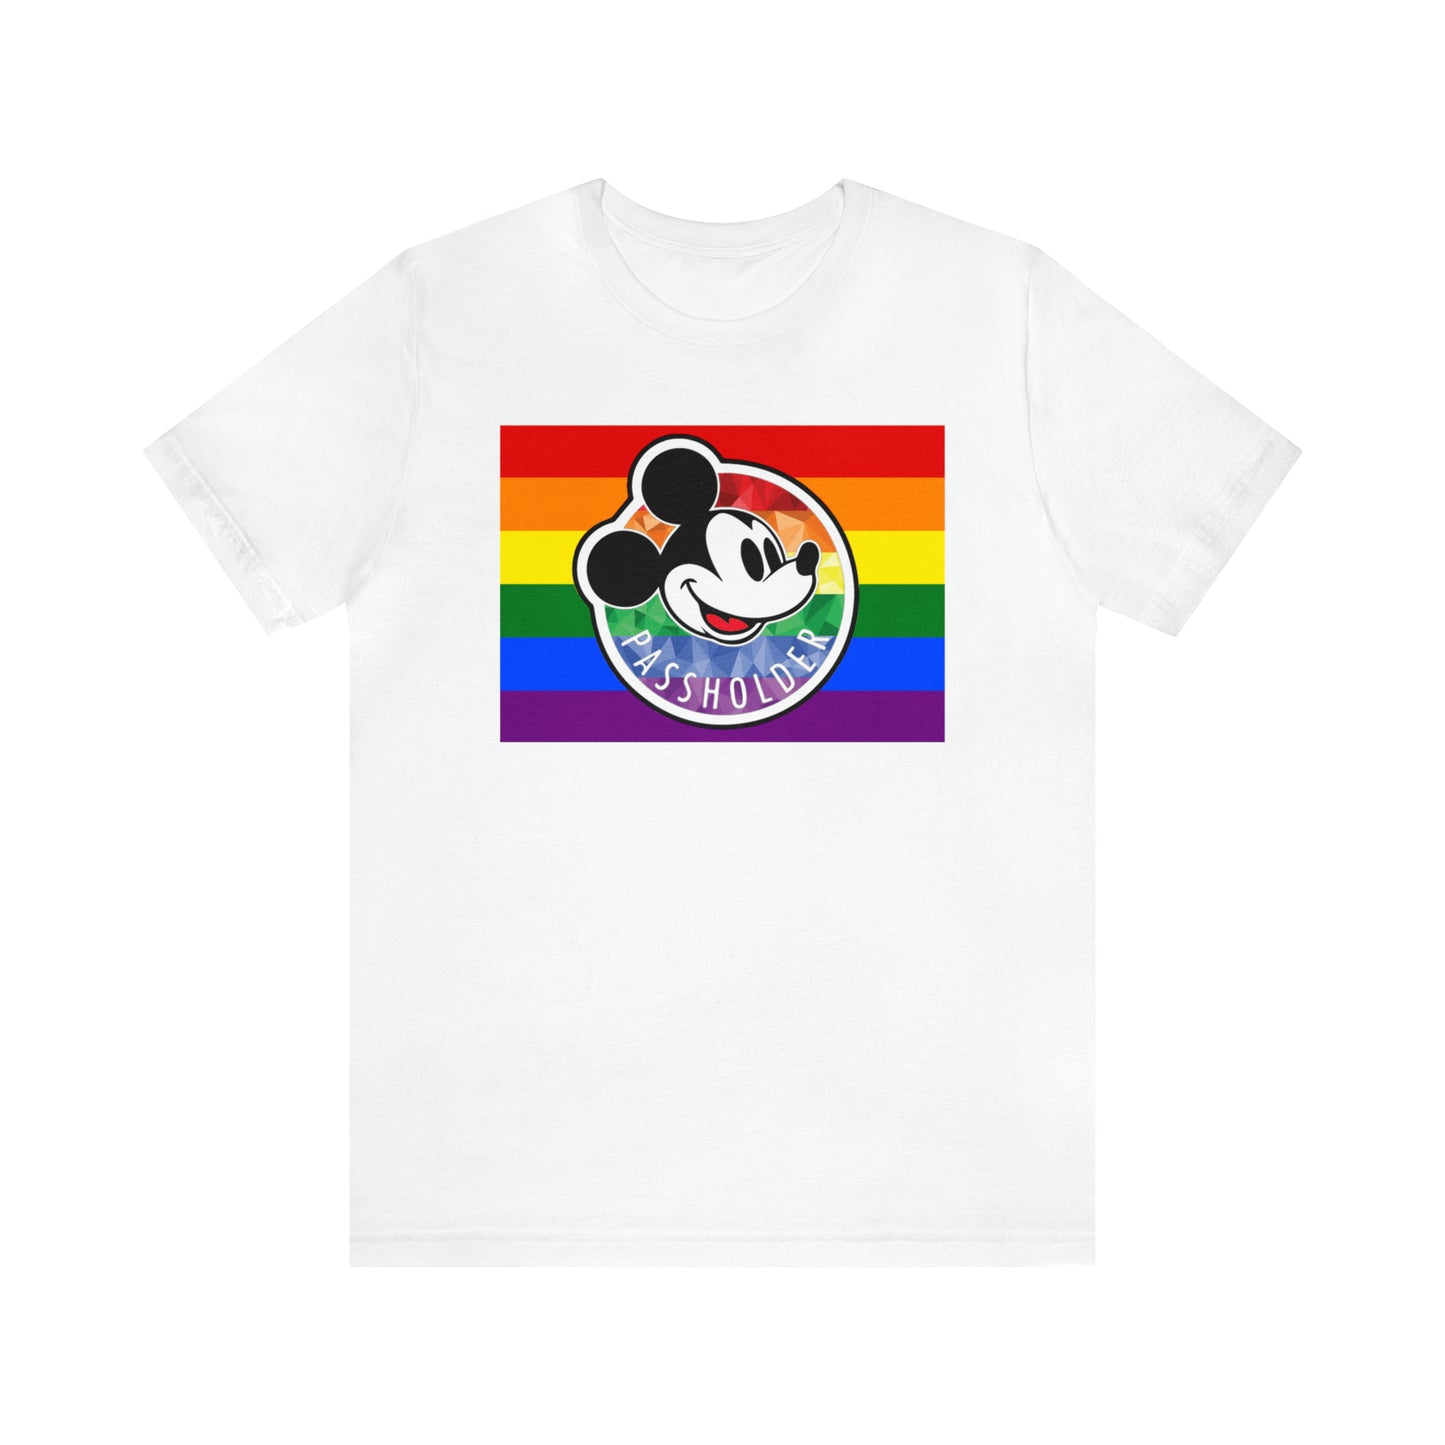 Camiseta unisex de manga corta Rainbow Pride Annual Passholder